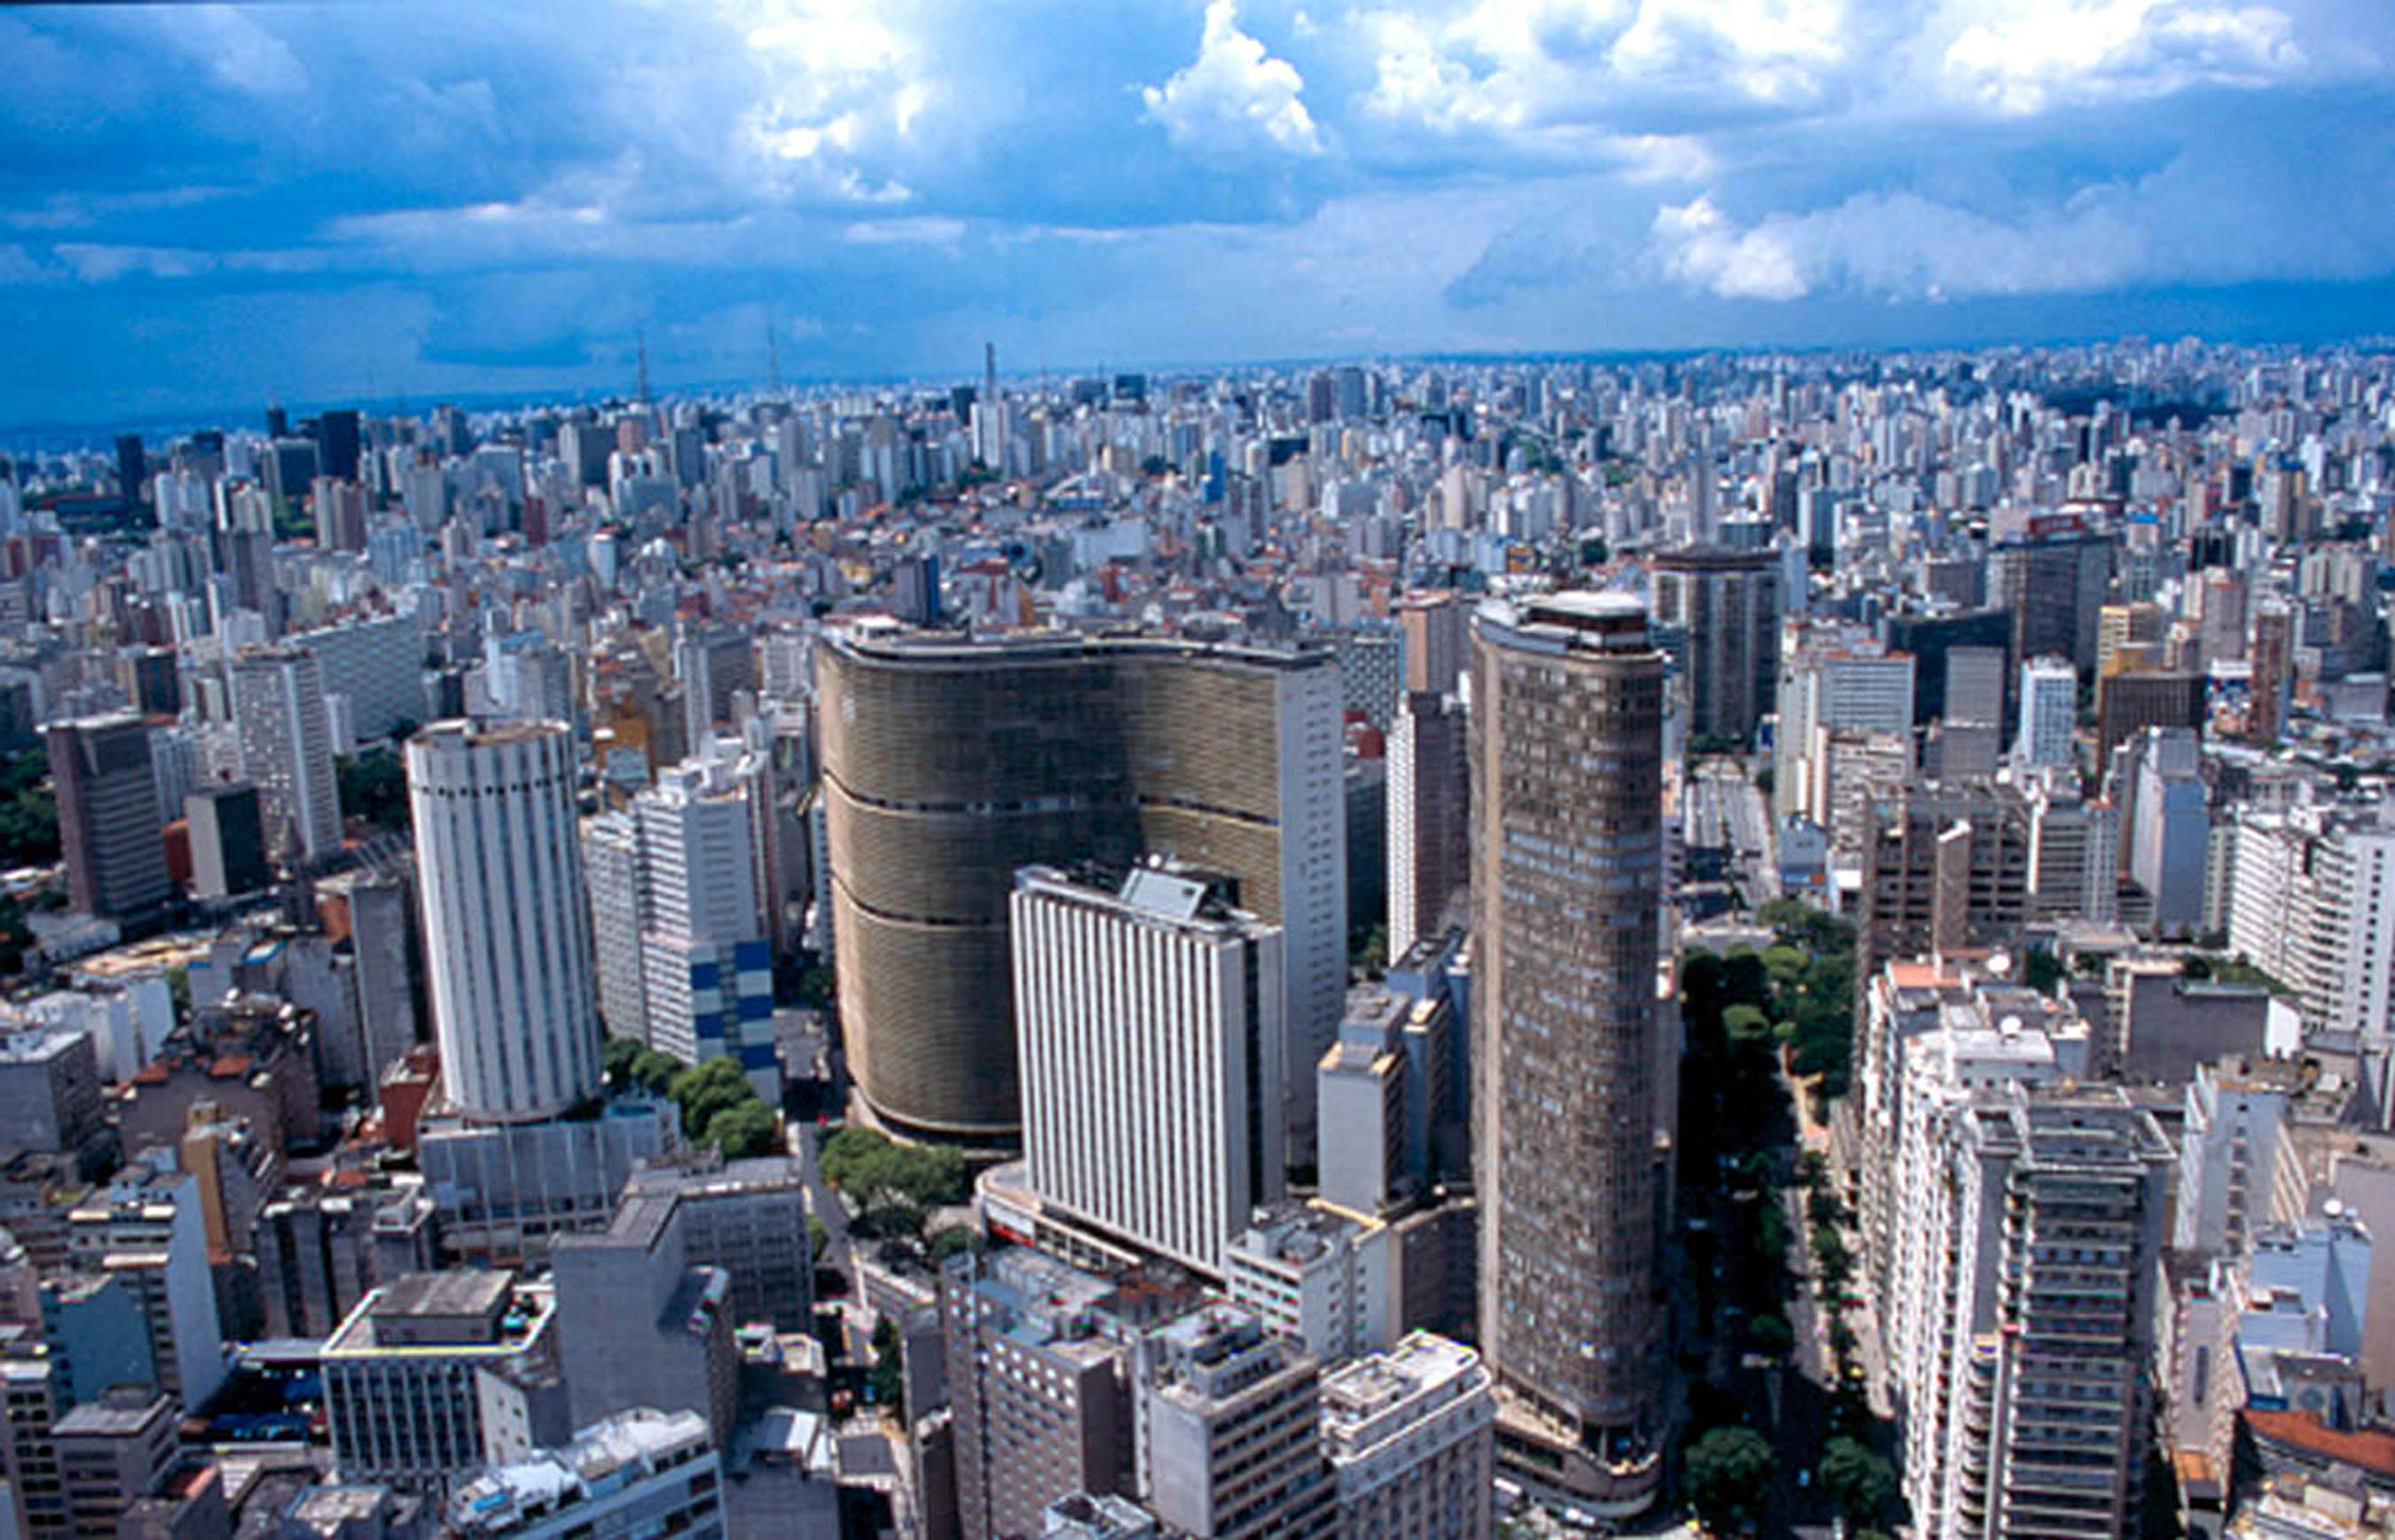 São Paulo city.